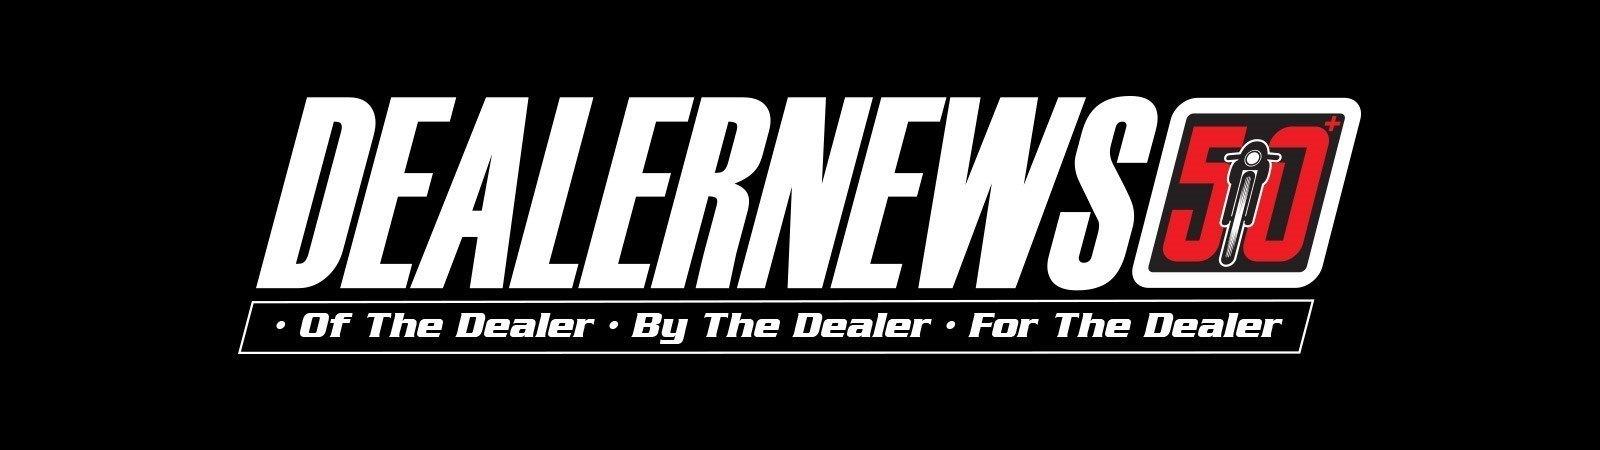 Dealer News Logo Large